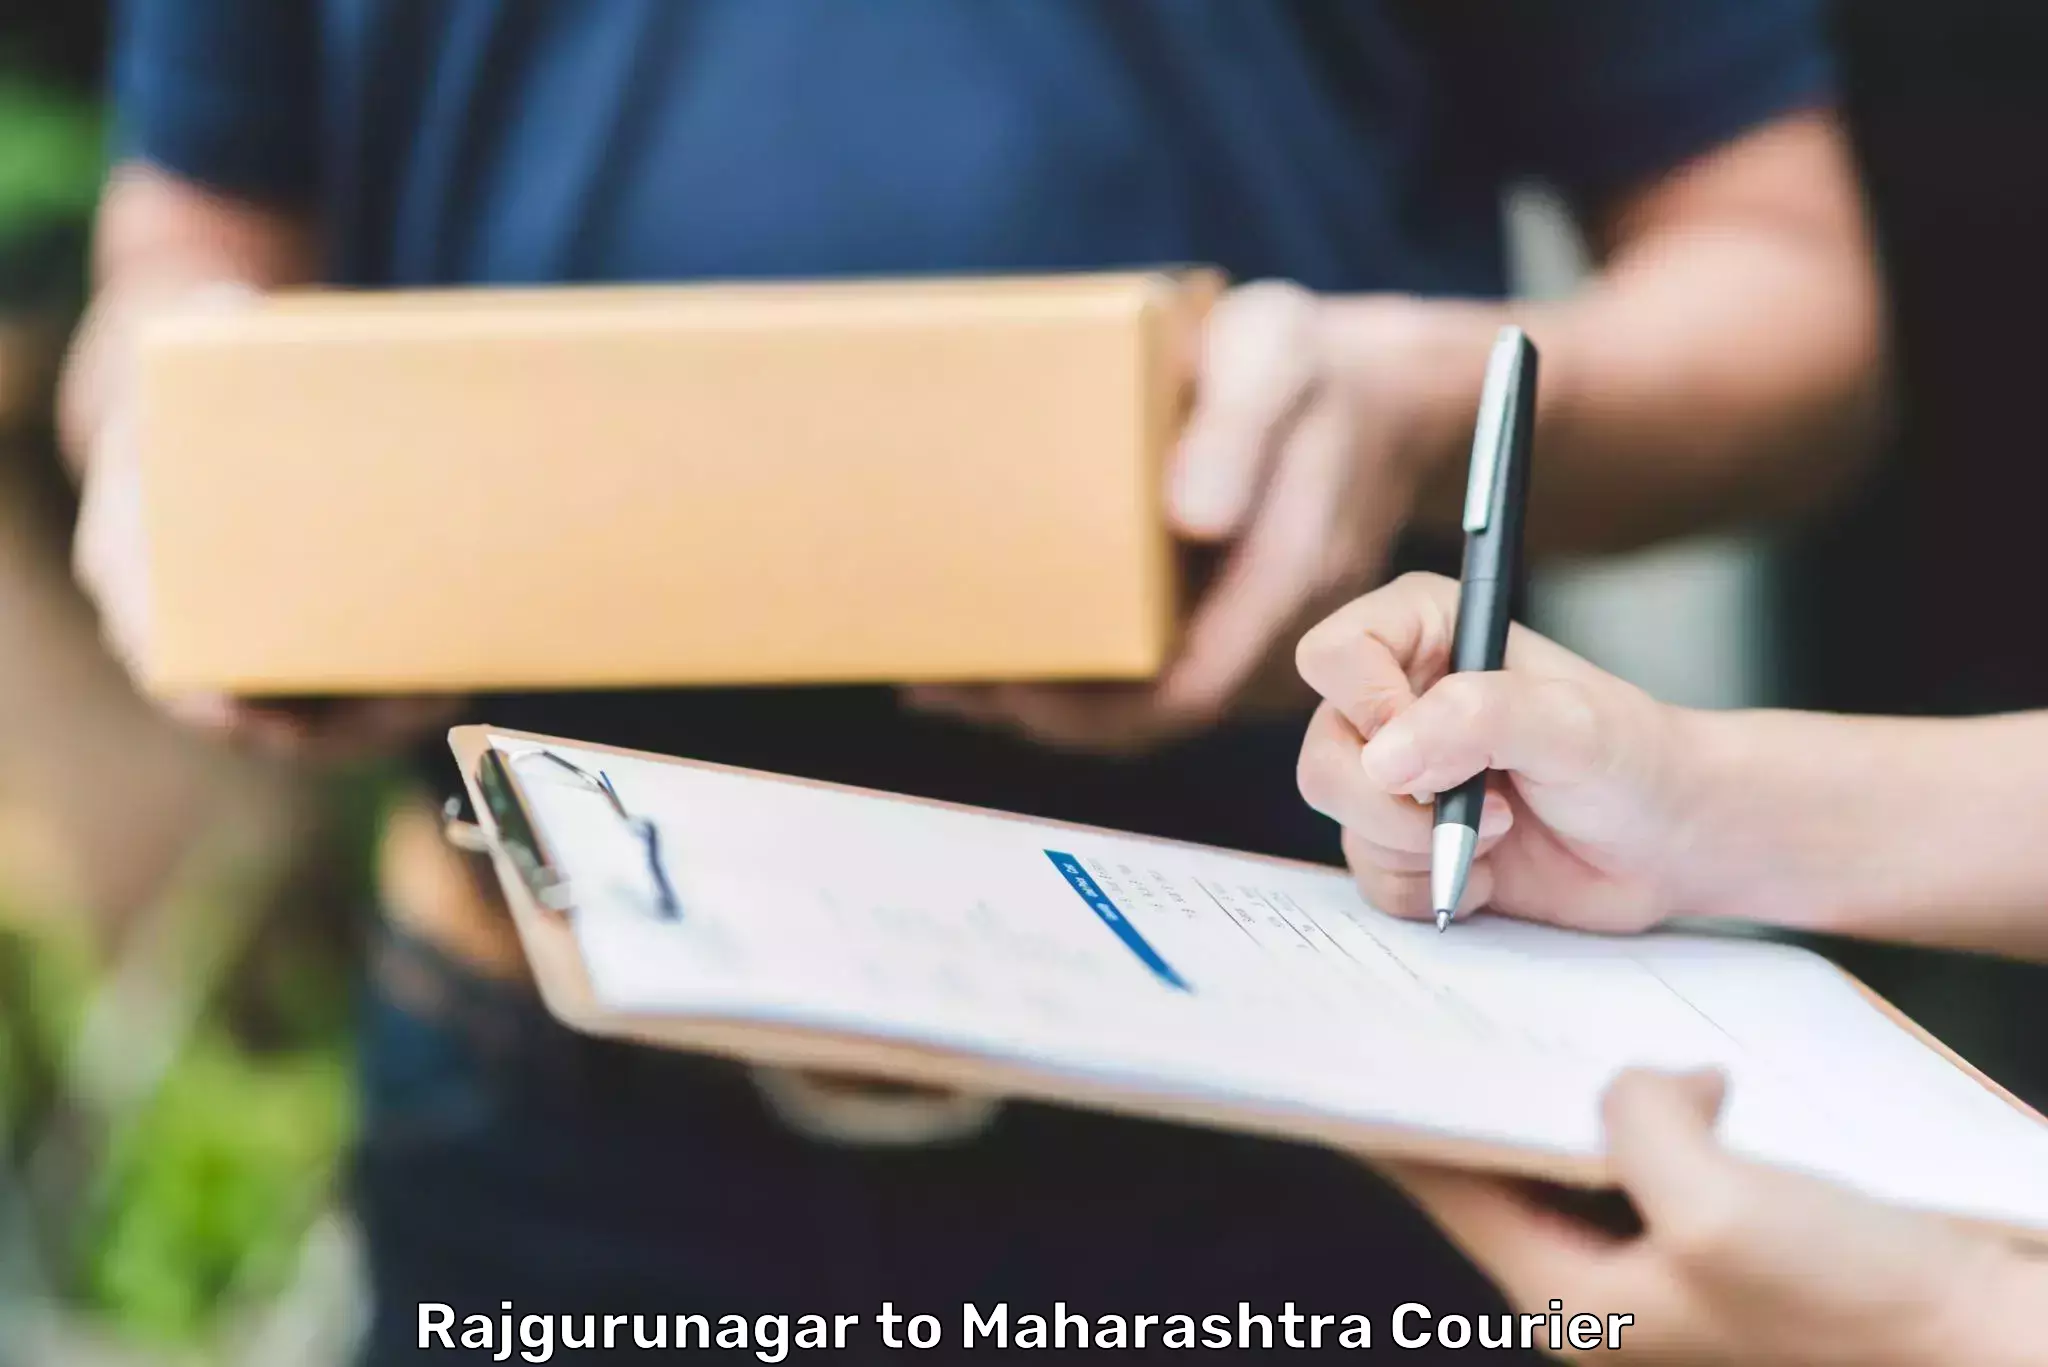 Bulk courier orders Rajgurunagar to Dindori Nashik